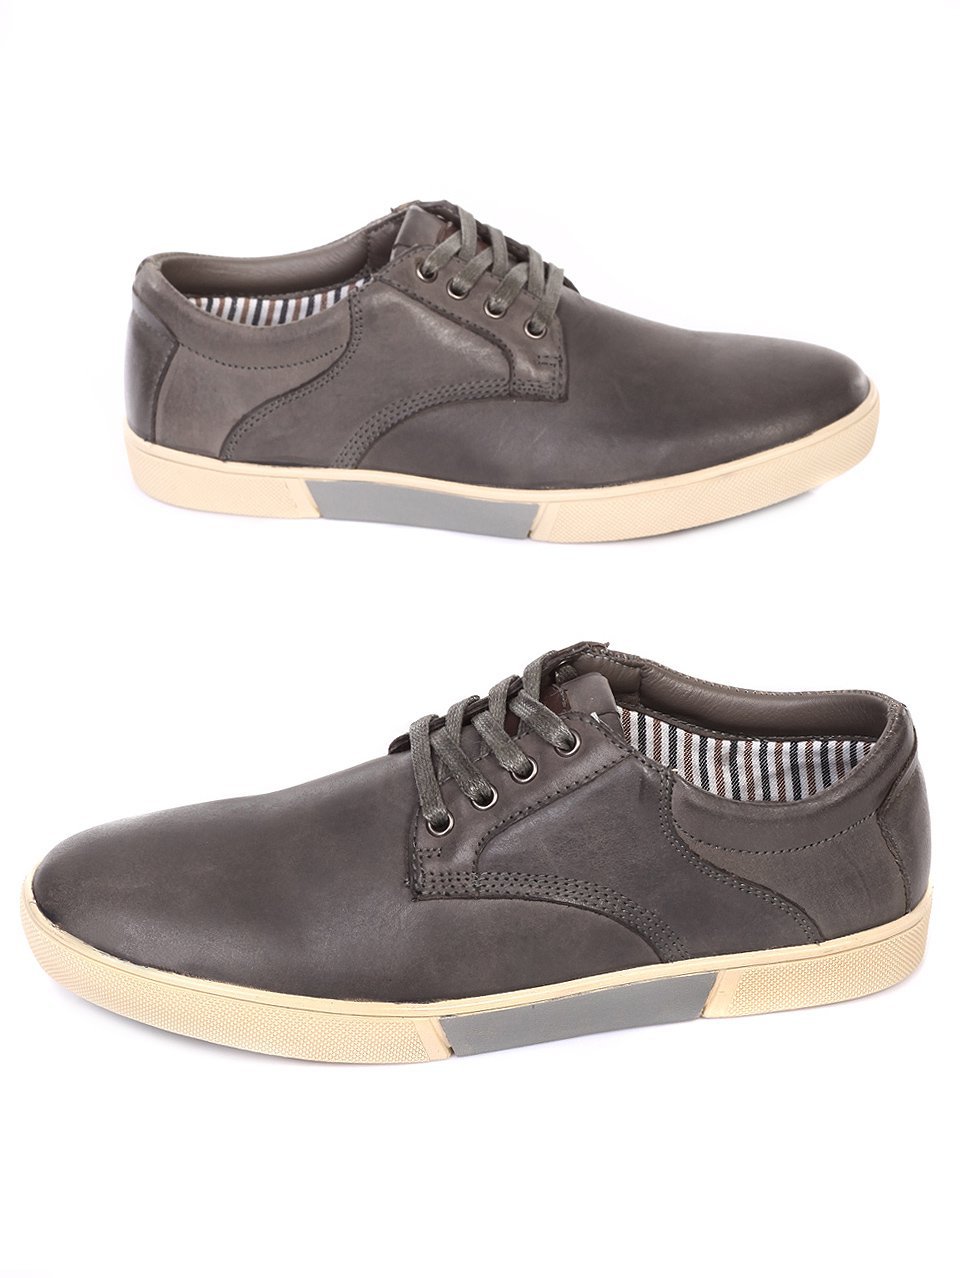 Ежедневни мъжки обувки от естествен набук в сиво 7N-18106 grey